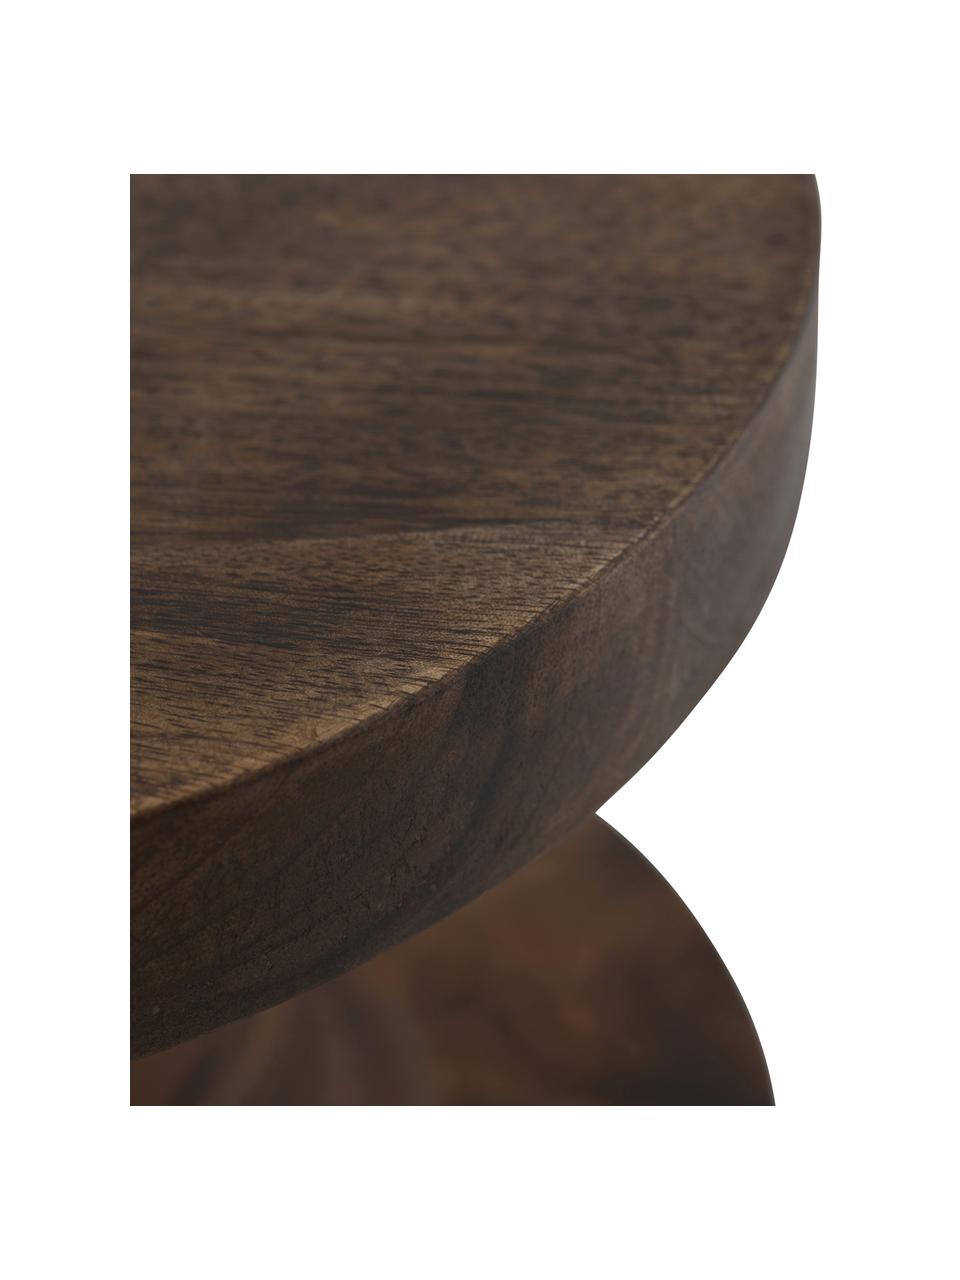 Table d'appoint ronde bois de manguier Retina, Manguier, métal, Brun foncé, Ø 30 x haut. 45 cm